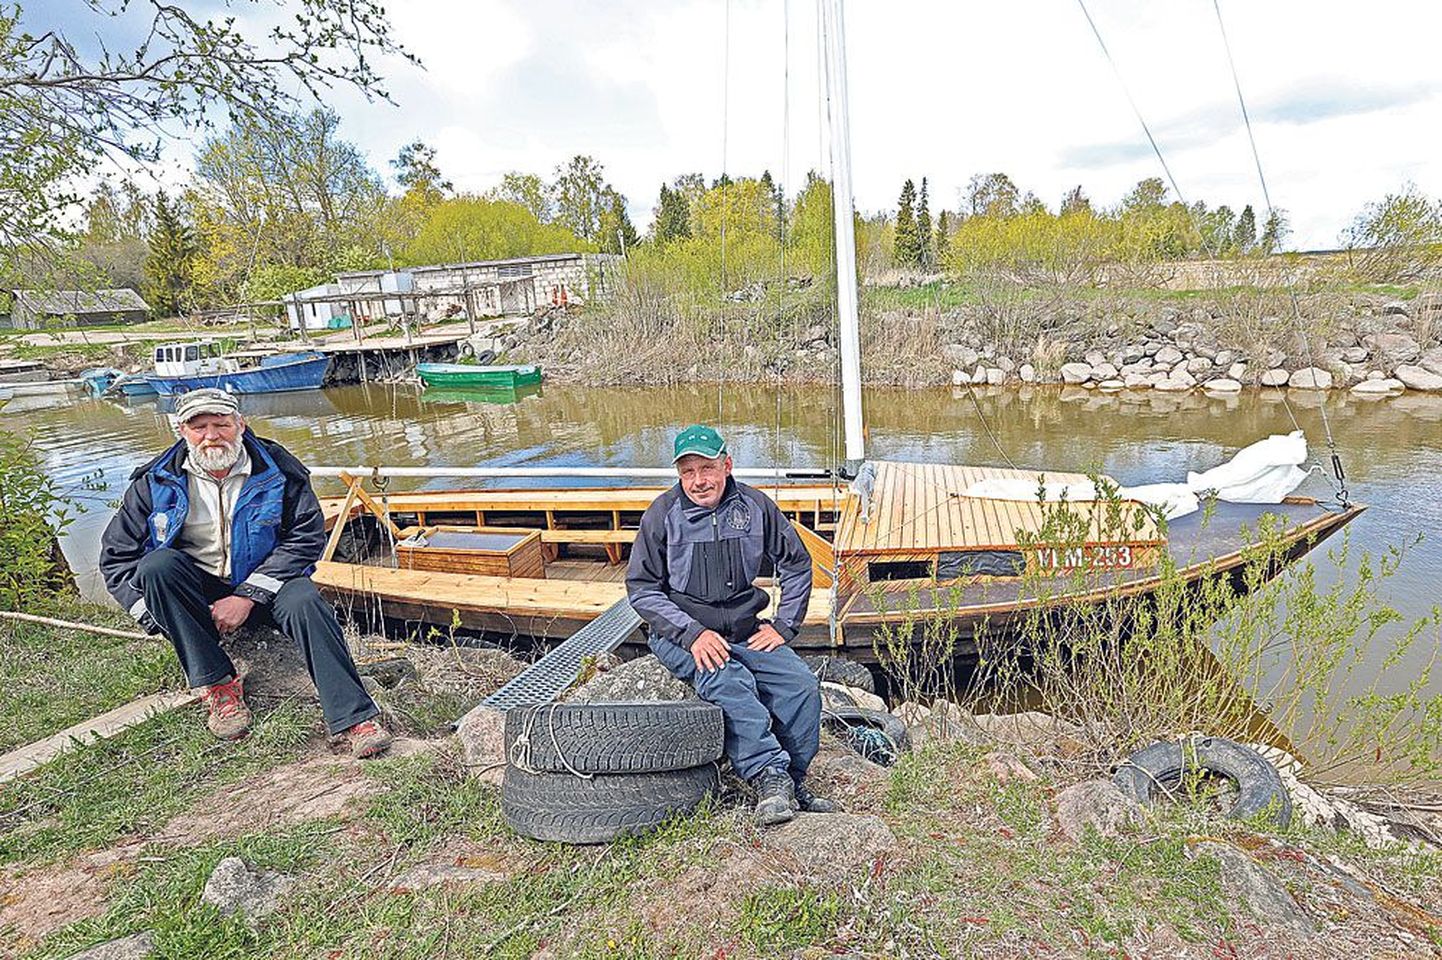 Võrtsjärve kalurid Ants Leiaru (vasakul) ja Marko Vaher kulutasid nelja aasta vältel pea kogu tööst üle jäänud aja kalepurjeka ehitamisele. See on meistritel juba kolmas omataoline. Laeva pidulik ristimine ootab ees 18. mail.